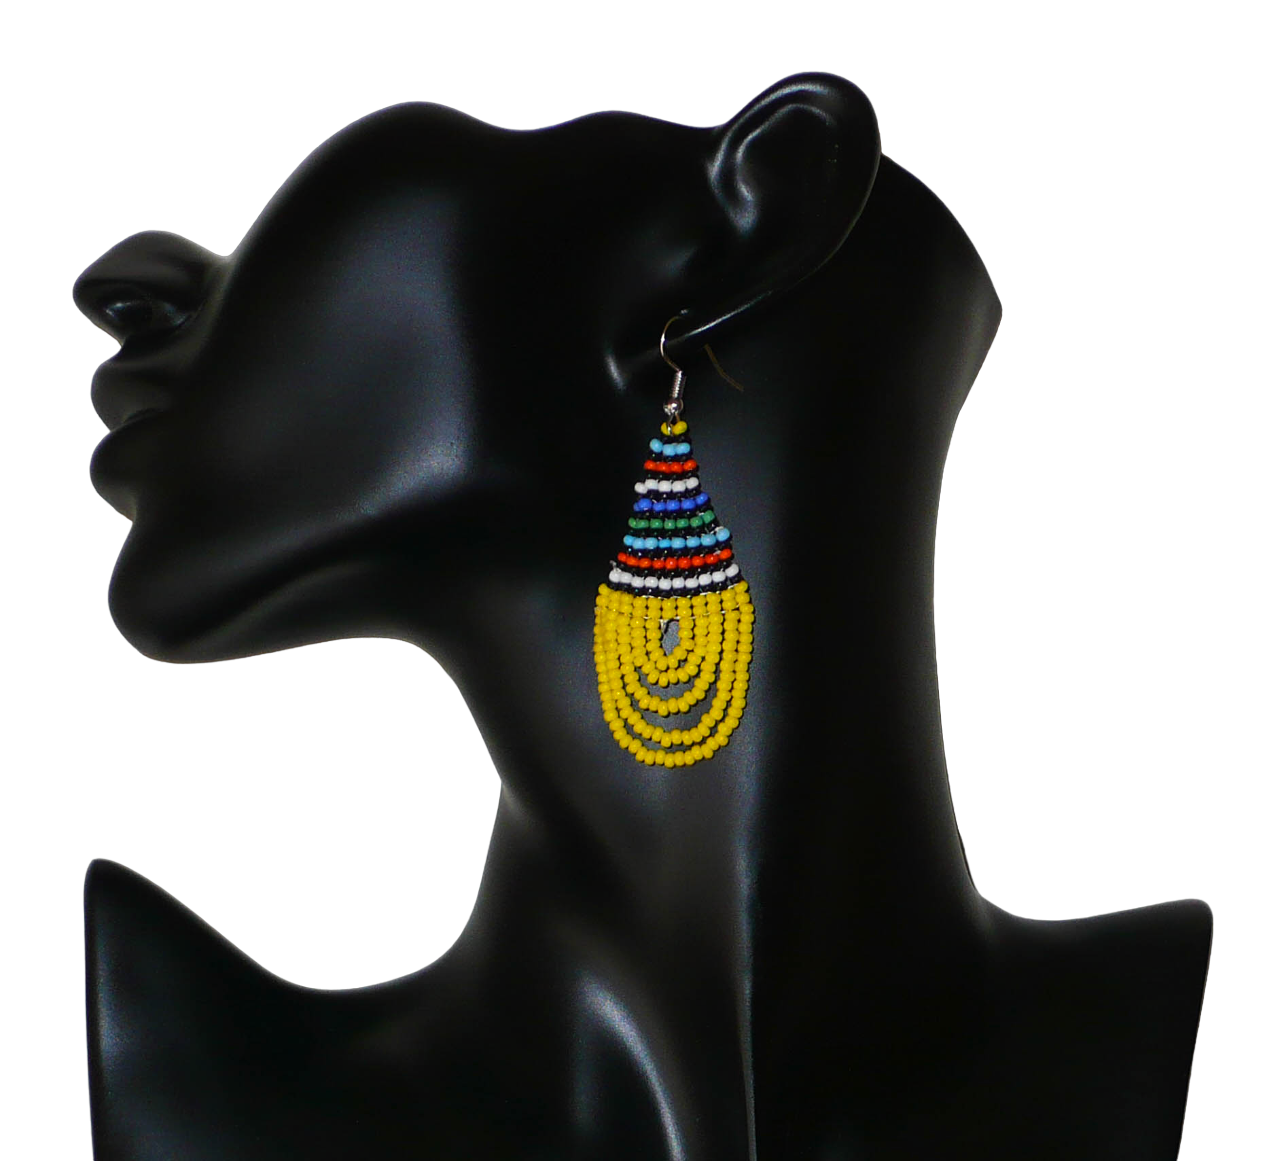 Boucles d'oreilles africaines traditionnelles zouloues en forme de gouttes composées d'un tissage de perles de rocaille jaunes et multicolores. Elles mesurent 7 cm de long et 2,5 cm de large et se portent sur des oreilles percées. Photographiées sur un mannequin. Timeless Fineries